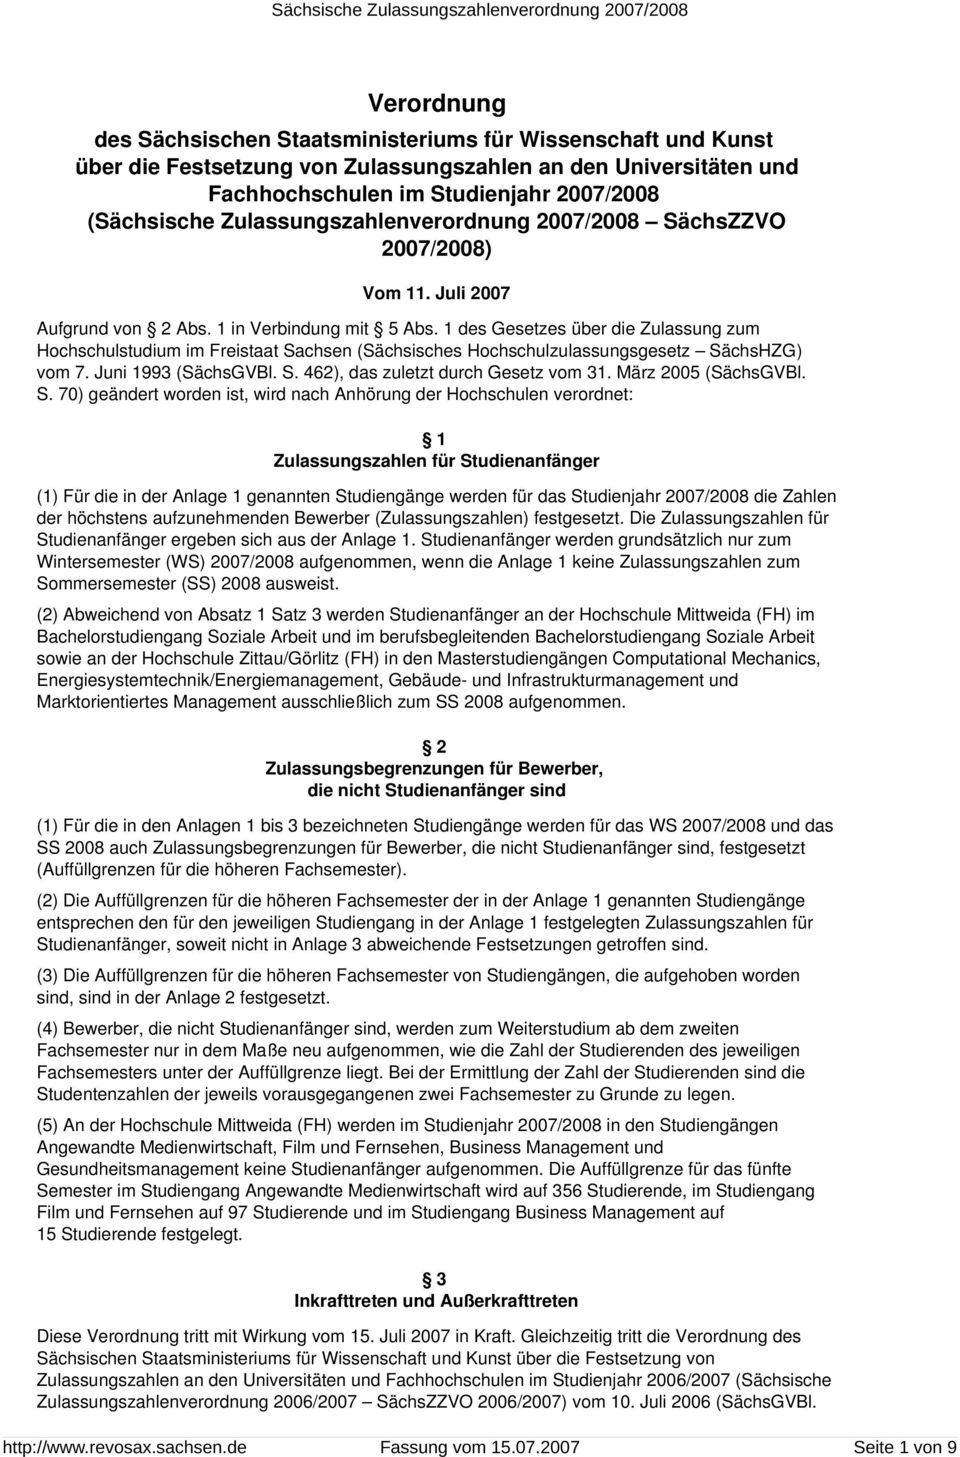 1 des Gesetzes über die Zulassung zum Hochschulstudium im Freistaat Sachsen (Sächsisches Hochschulzulassungsgesetz SächsHZG) vom 7. Juni 1993 (SächsGVBl. S. 462), das zuletzt durch Gesetz vom 31.